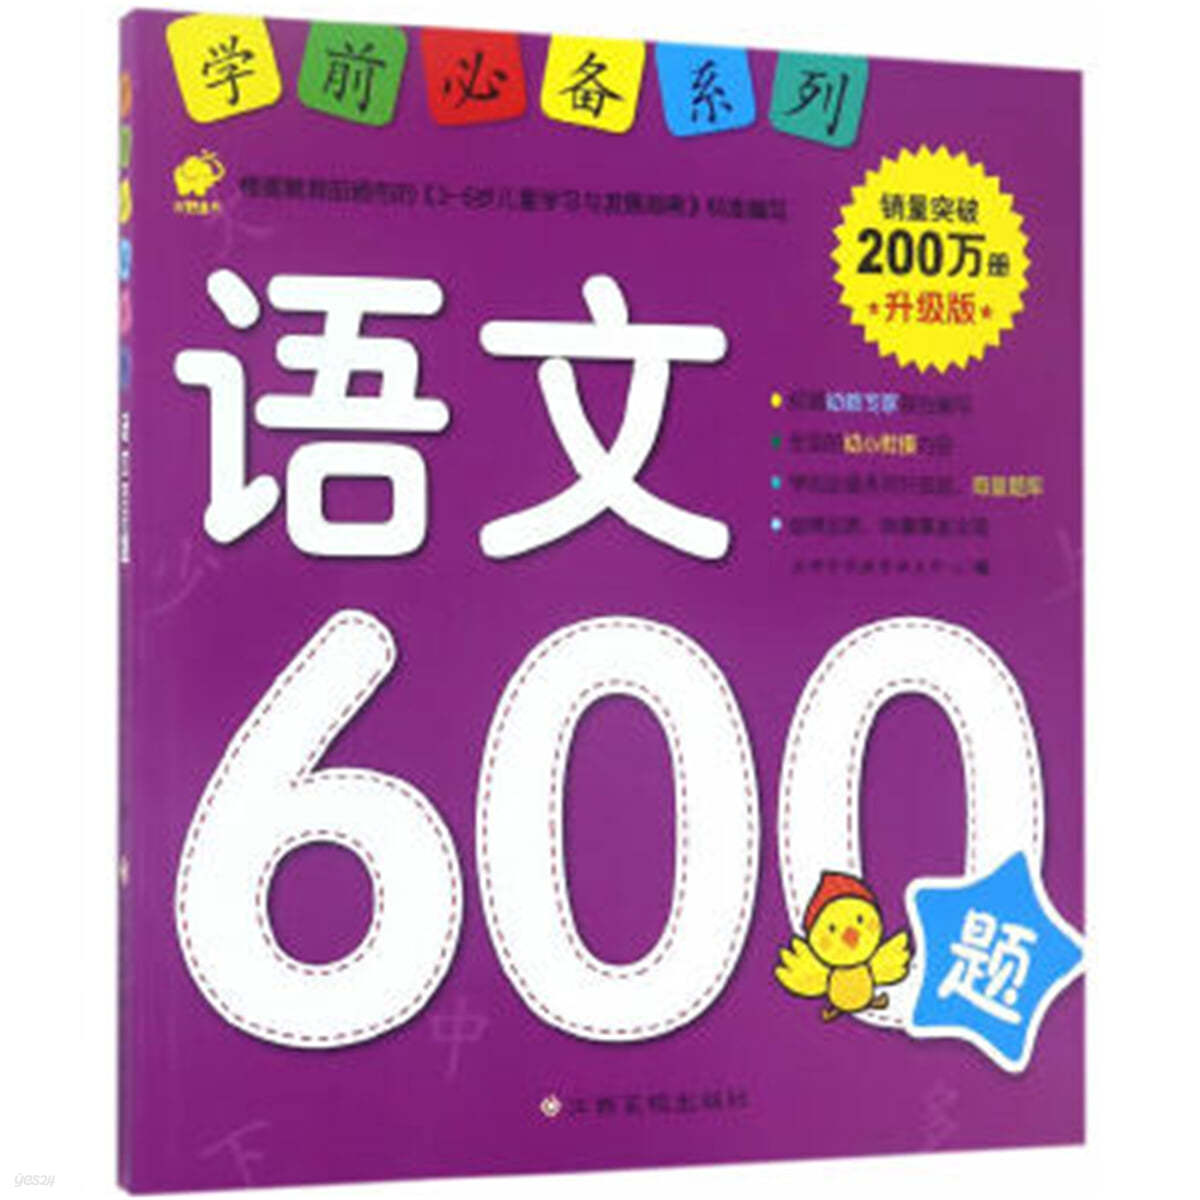 어문 600제 : 학전필비계열 (승급판) 語文600題 : 學前必備系列 升級版